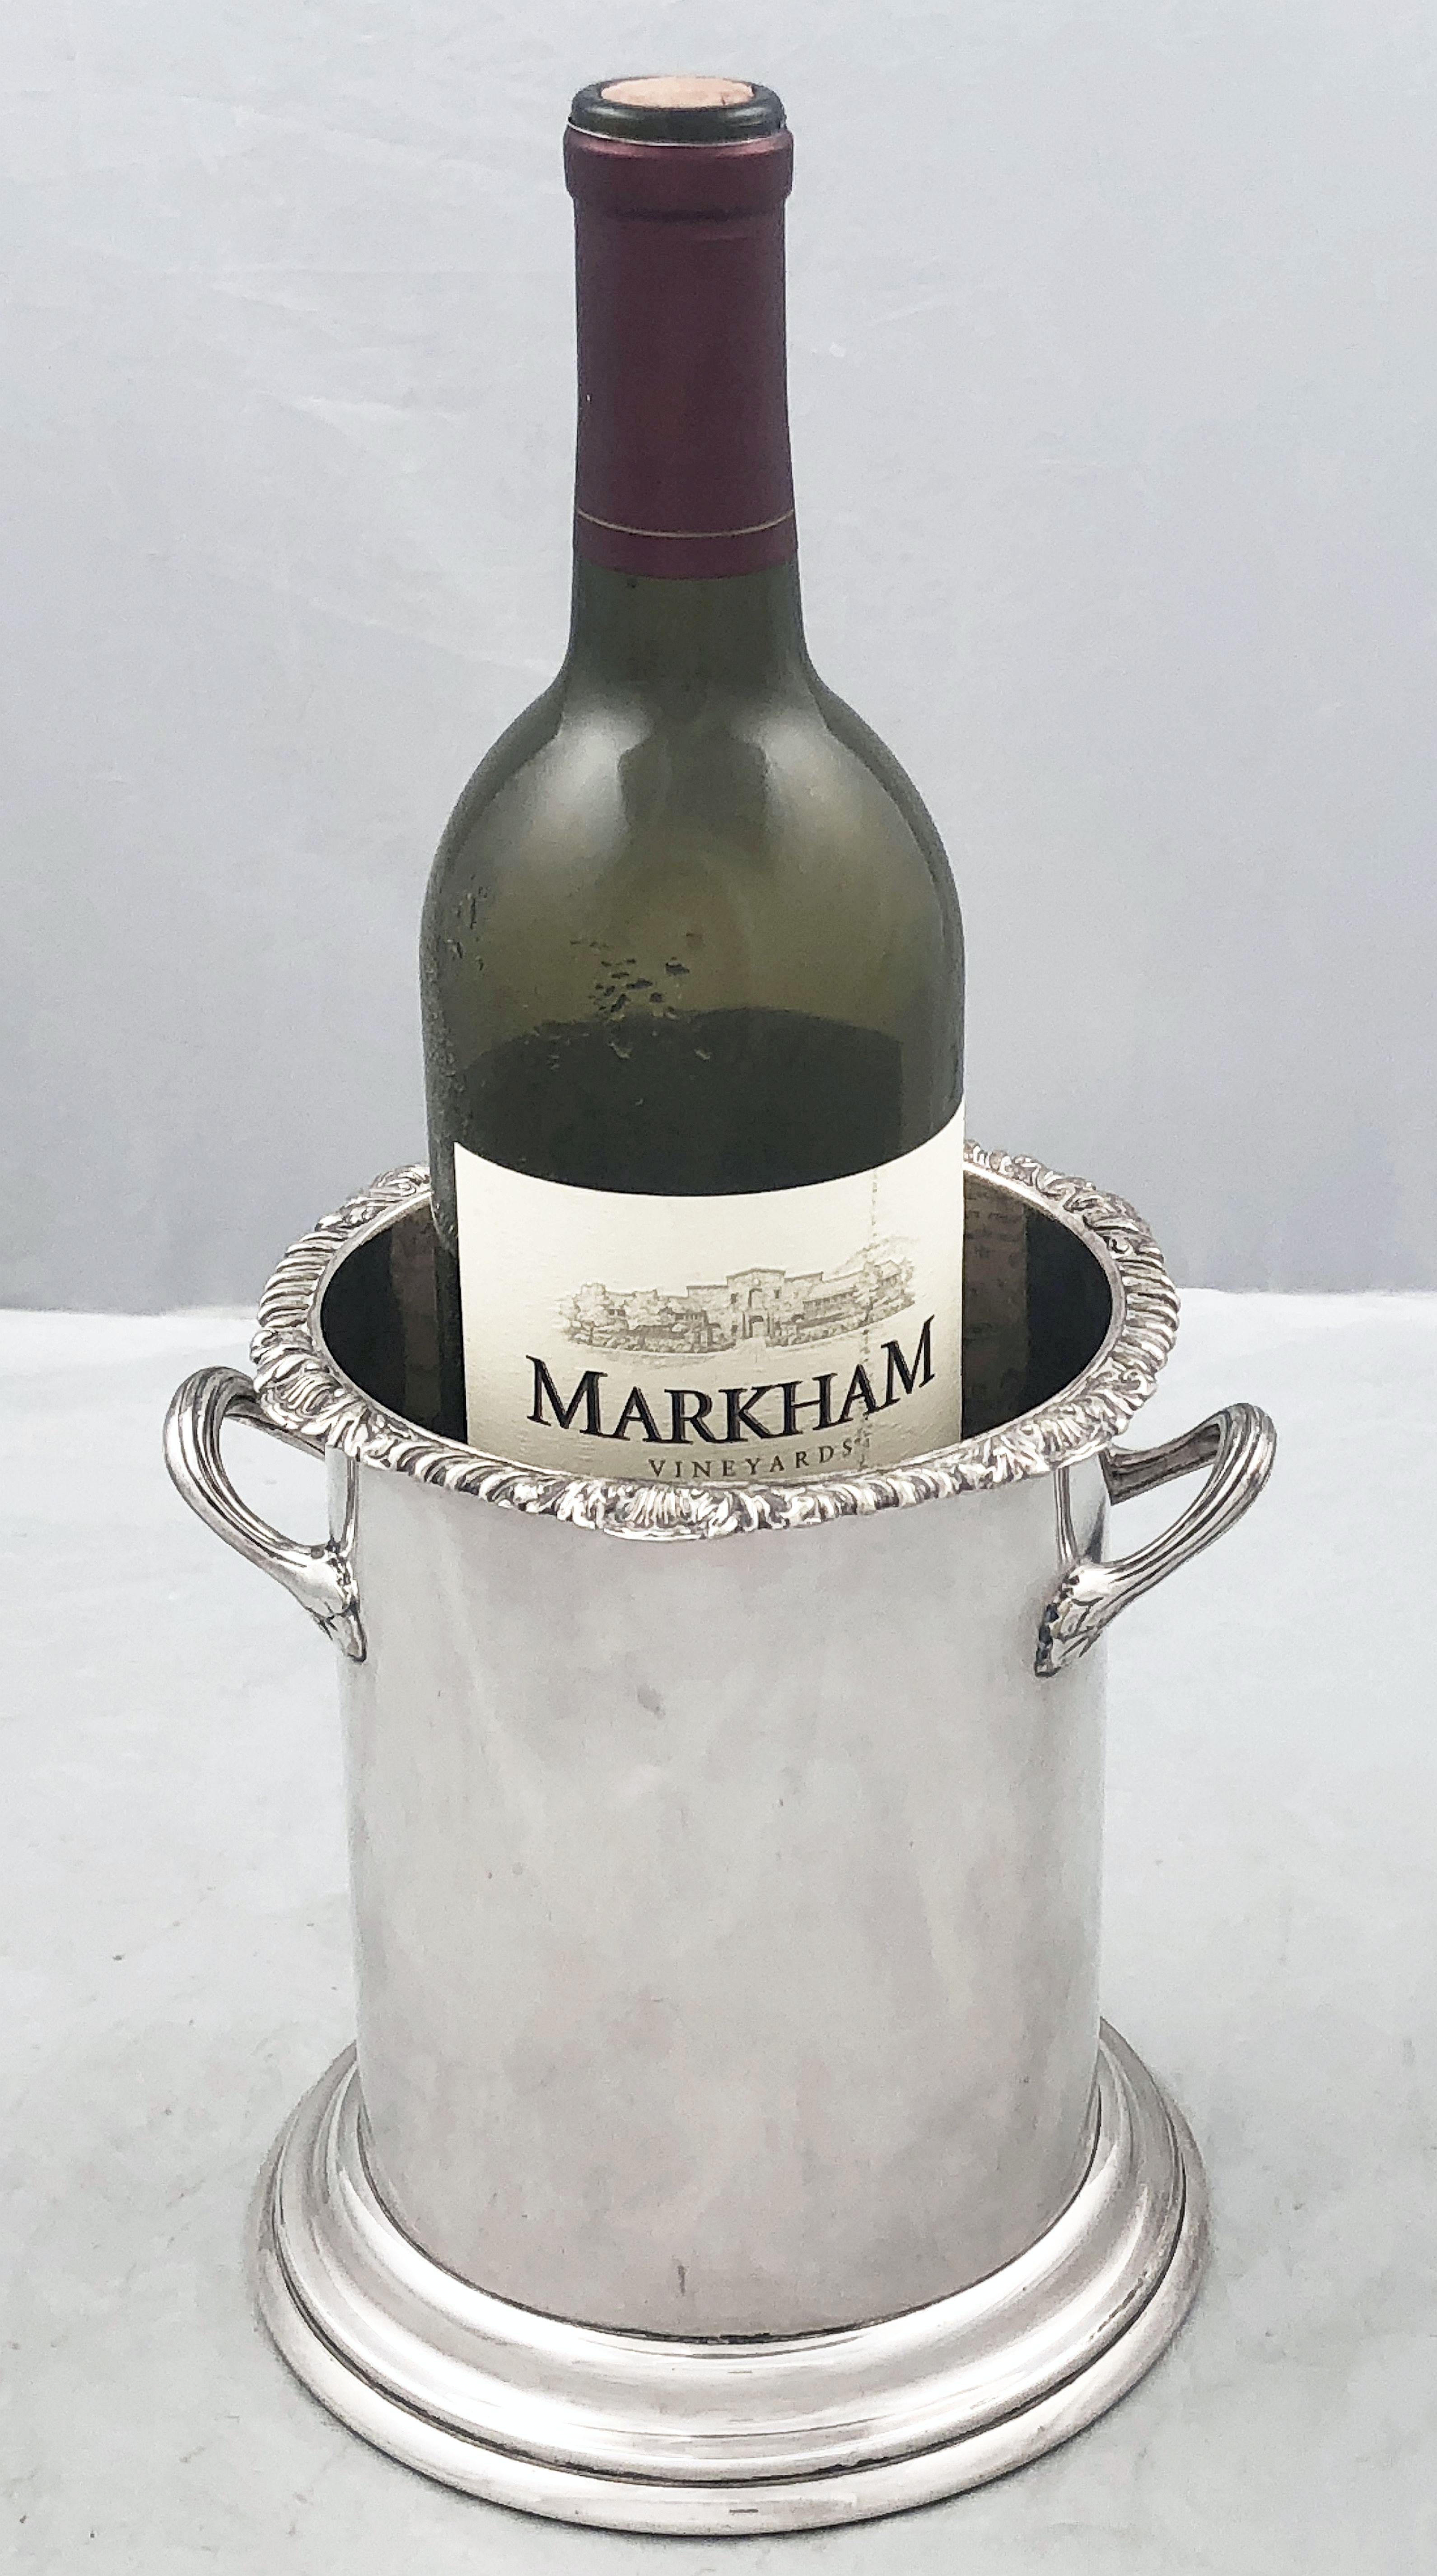 Un beau porte-bouteille ou sous-verre anglais pour bouteilles de vin et de champagne en argent fin, avec un bord supérieur ciselé, des poignées opposées élégantes et une base cylindrique surélevée.

Conçu pour ajouter un niveau d'élégance à la